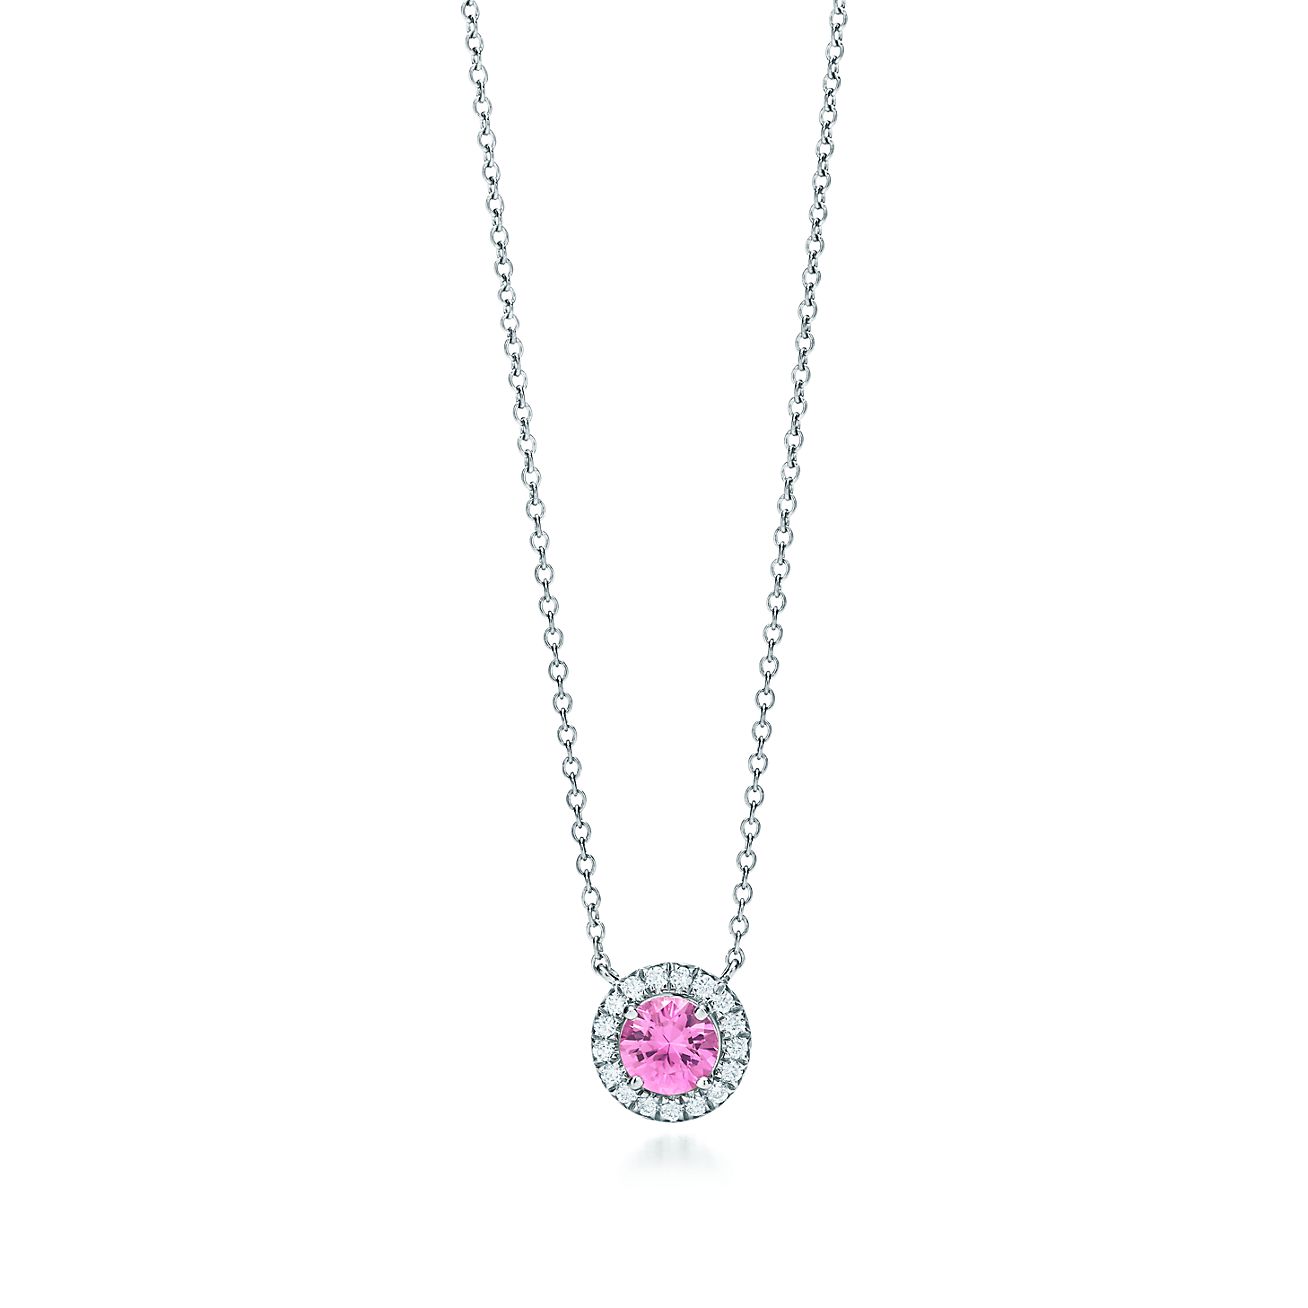 Tiffany Soleste® pendant in platinum 